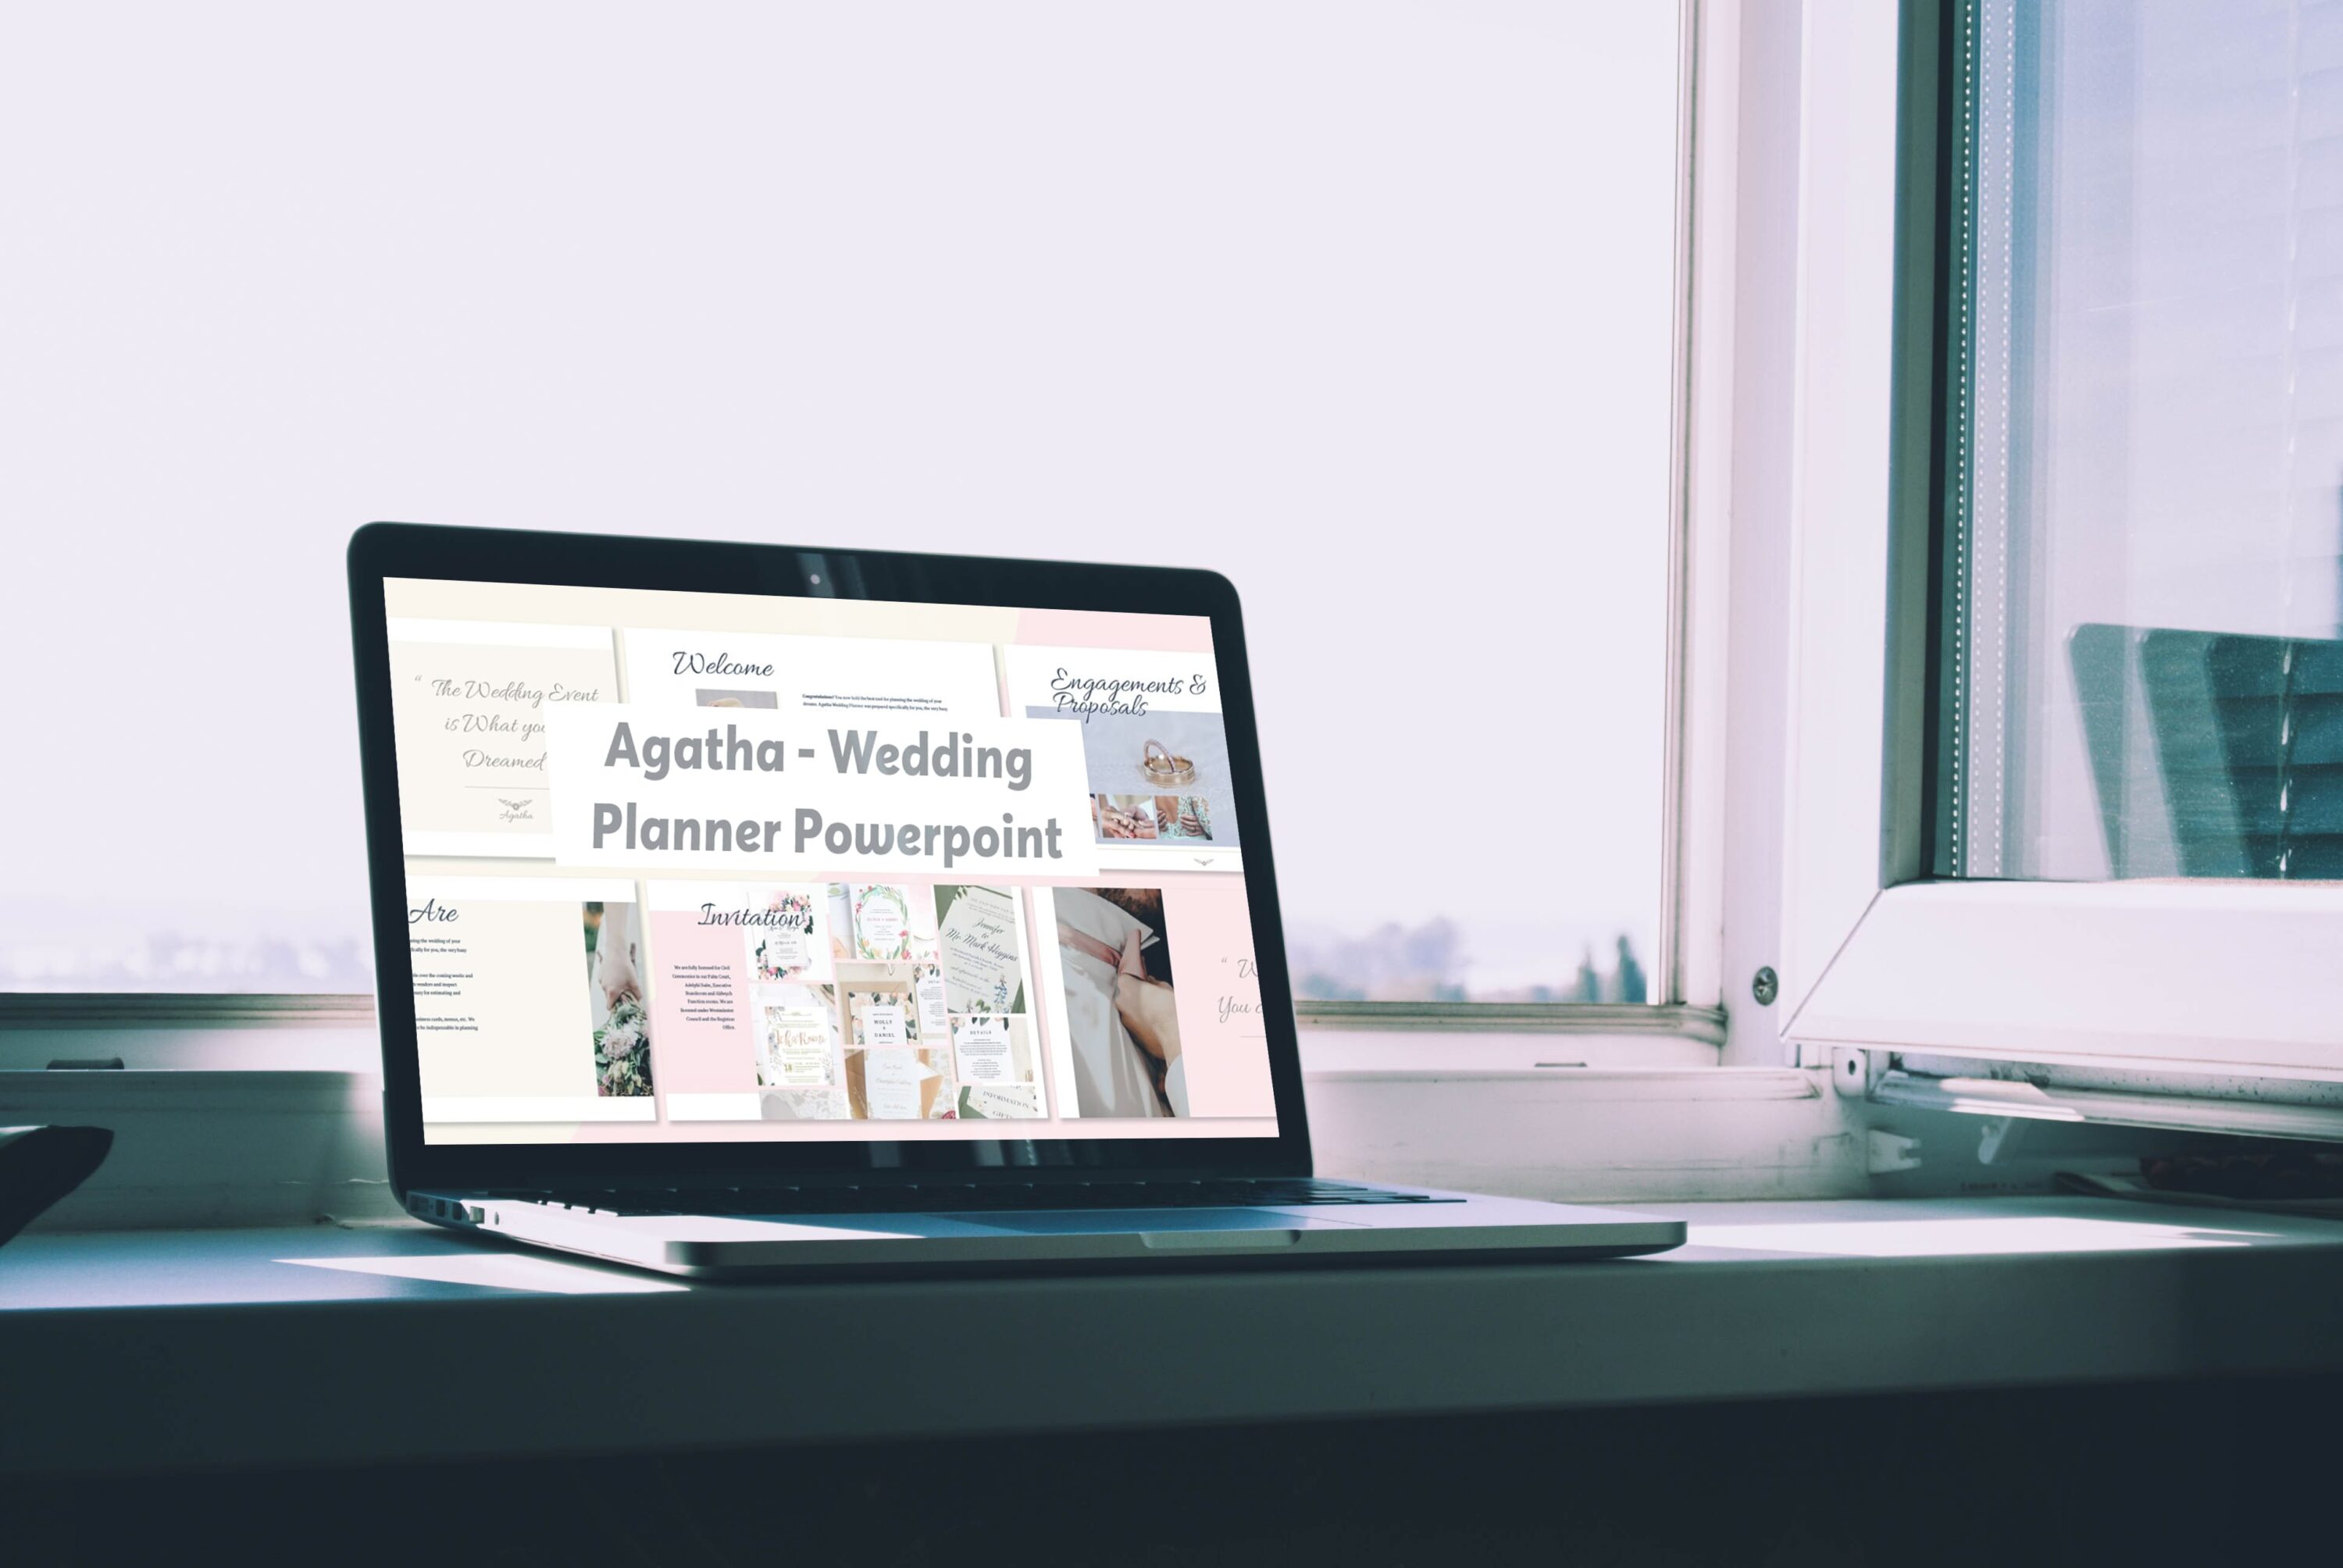 Agatha - Wedding Planner Powerpoint - laptop.